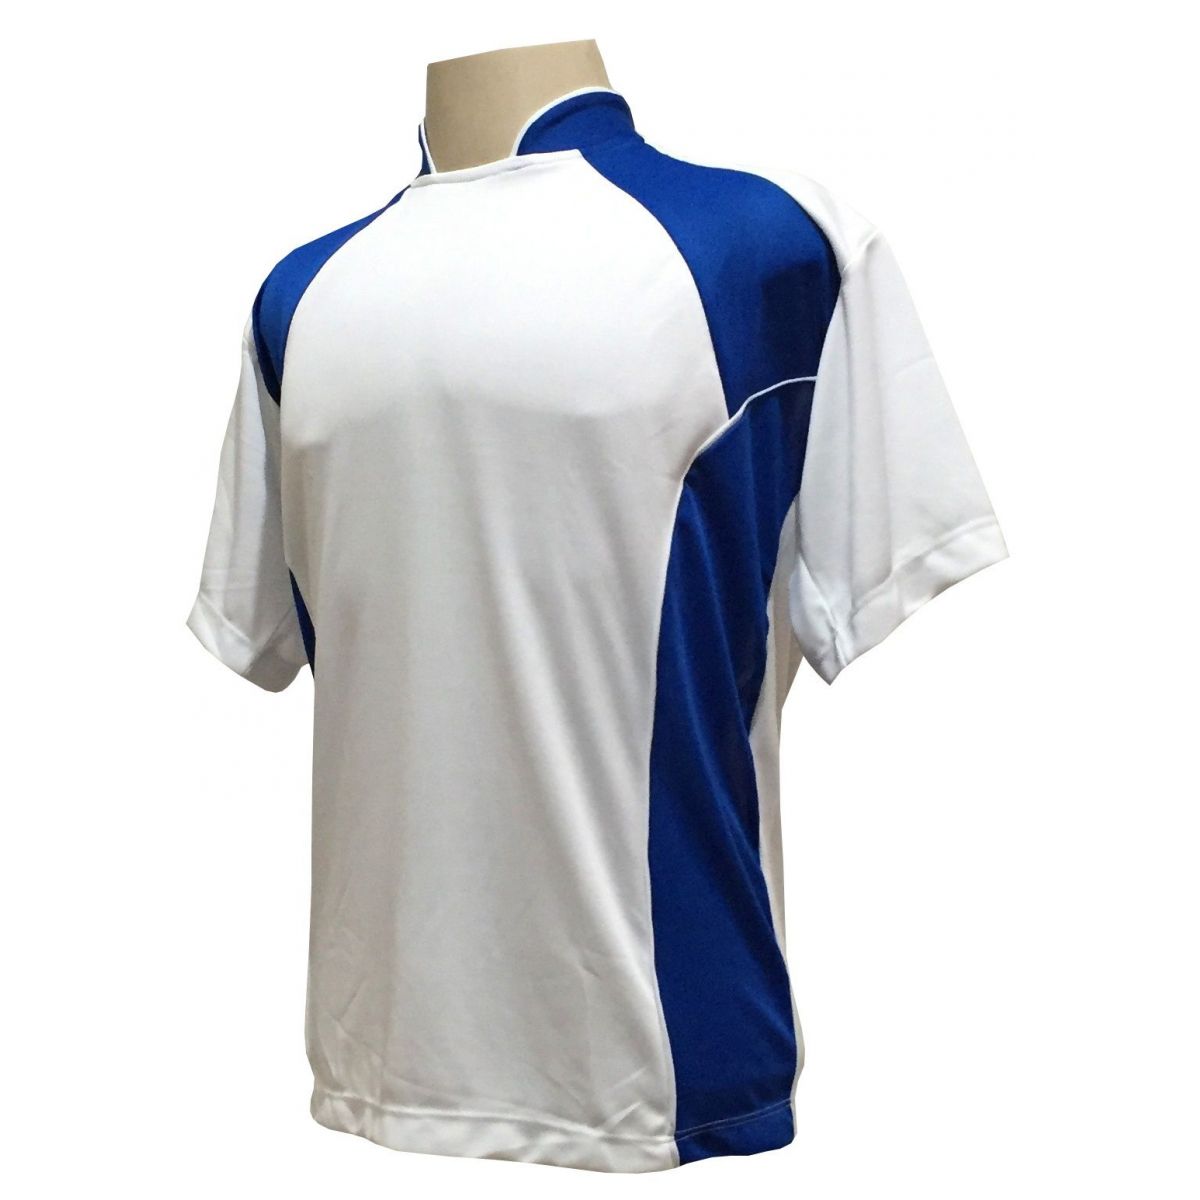 Uniforme Esportivo Completo modelo Suécia 14+1 (14 camisas Branco/Royal + 14 calções Madrid Branco + 14 pares de meiões Royal + 1 conjunto de goleiro) + Brindes